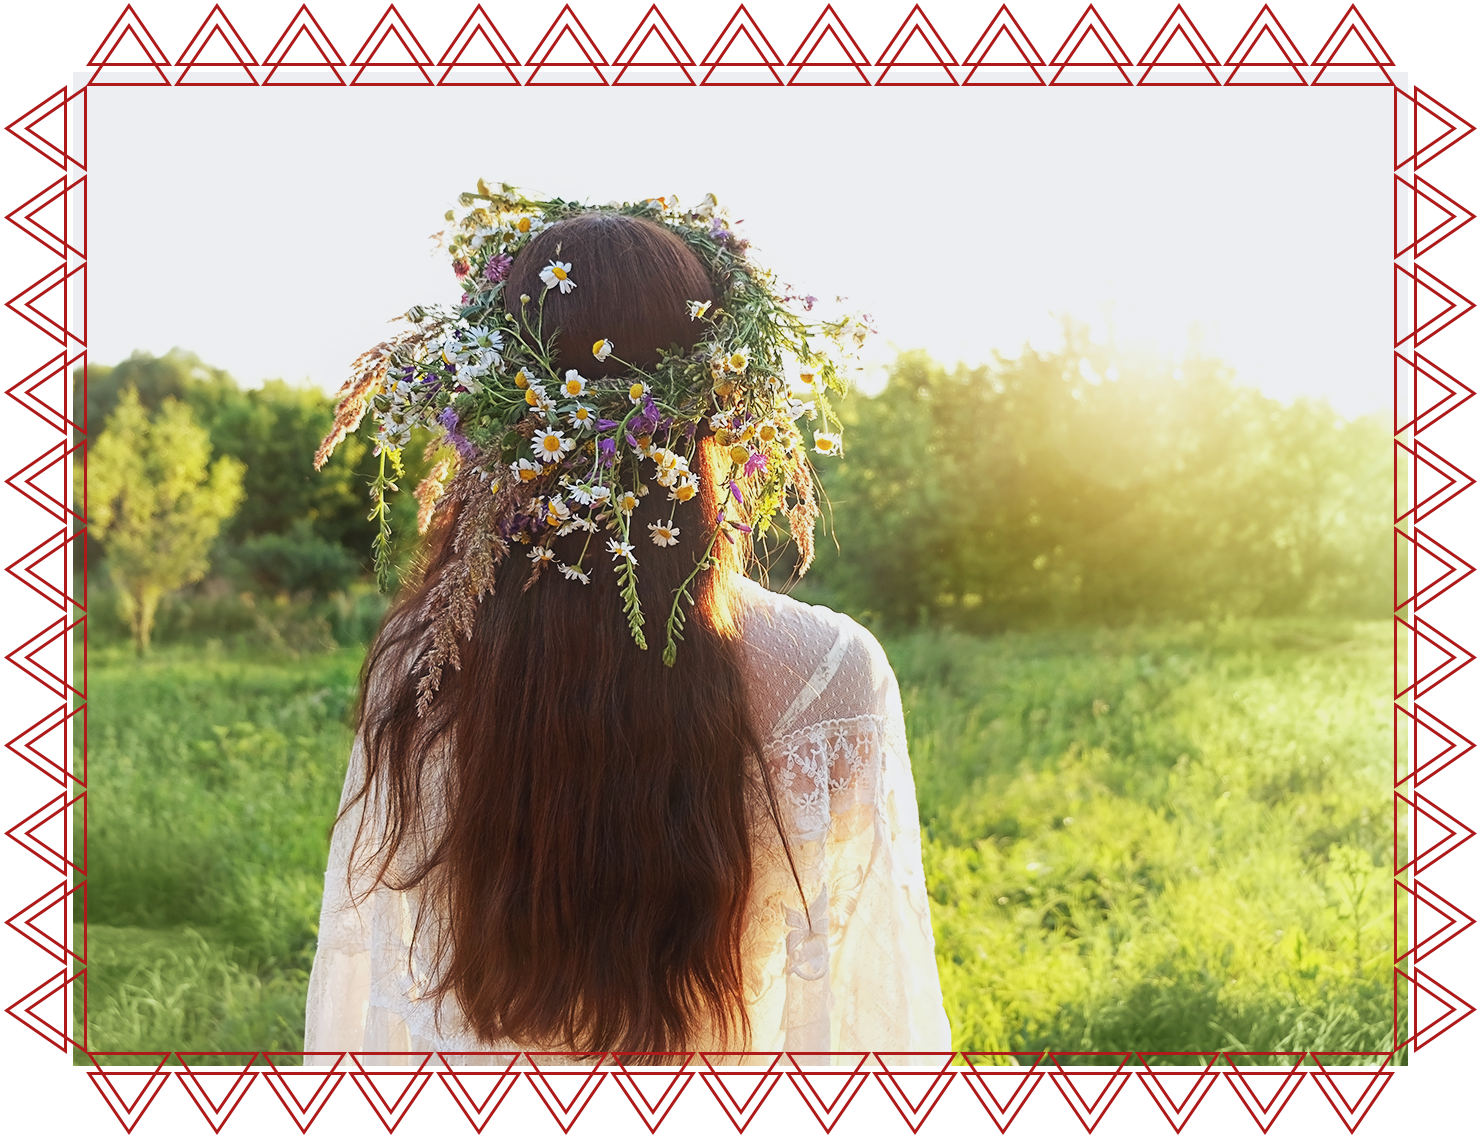 IACFS Schamanisches Wissen - Beltane - Fest des Sommerbeginns und der Fruchtbarkeit - Frau mit Blumenkranz am Kopf von hinten auf einer grünen Wiese